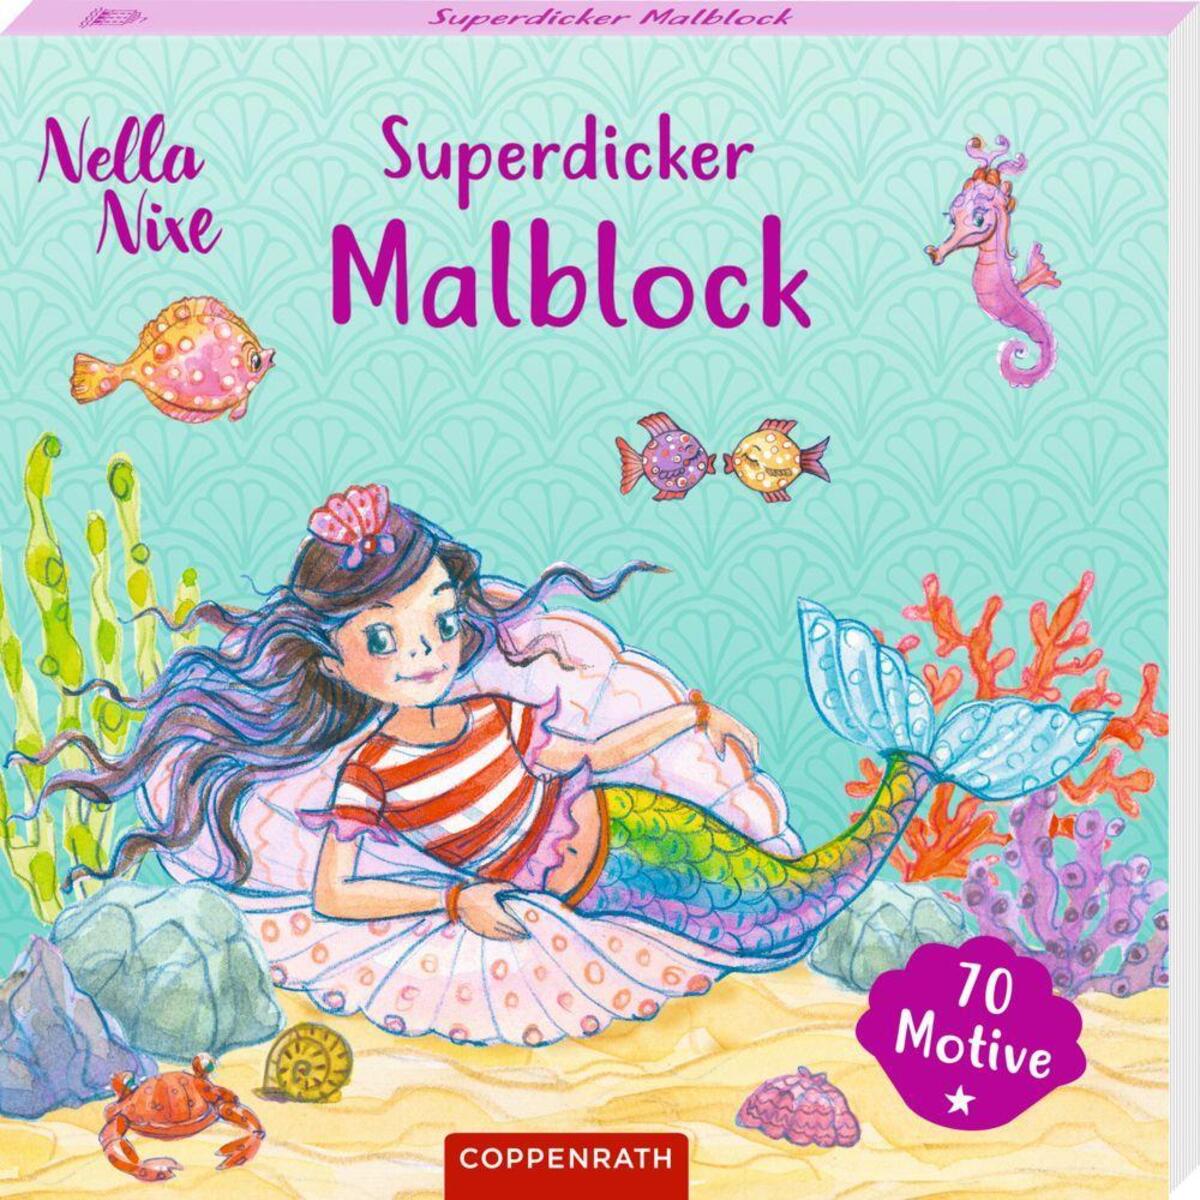 Superdicker Malblock (Nella Nixe) von Coppenrath F